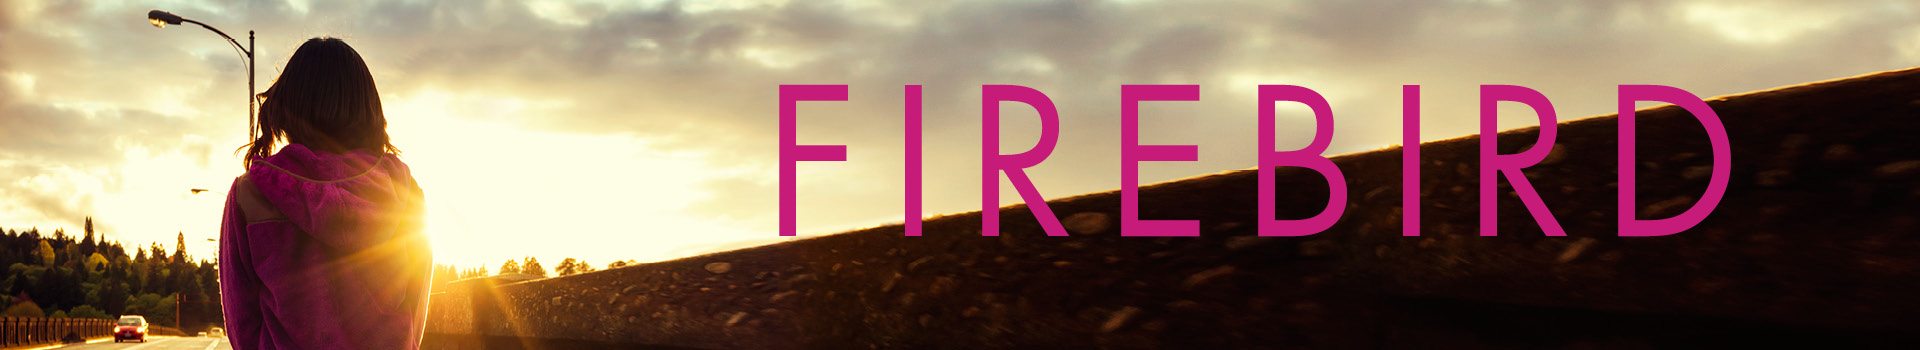 Firebird banner image